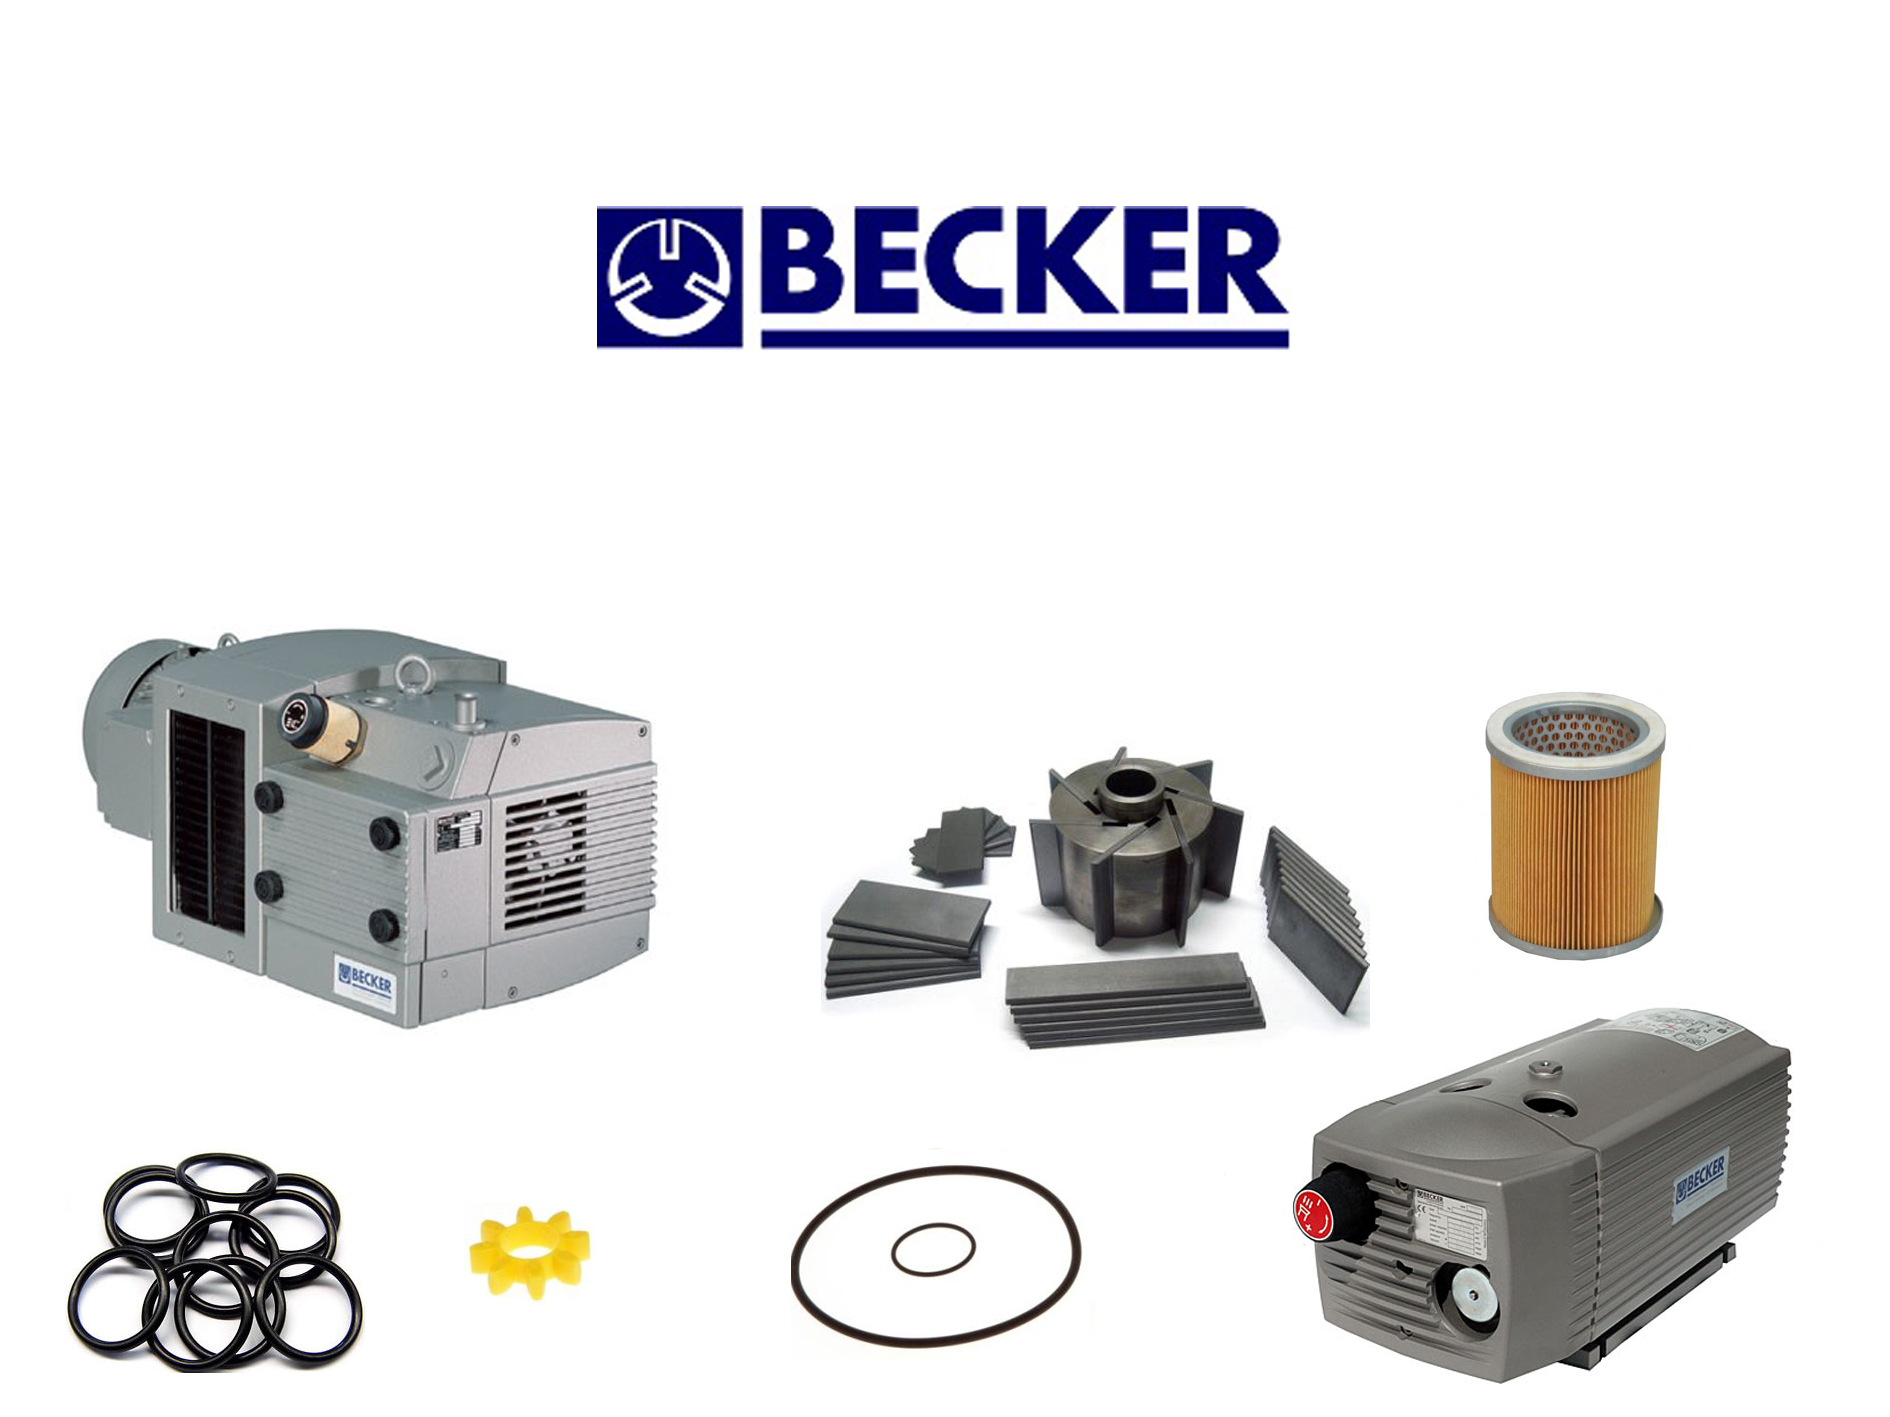 Becker Vakuum VT, Druschke Vakum Service, Spare parts